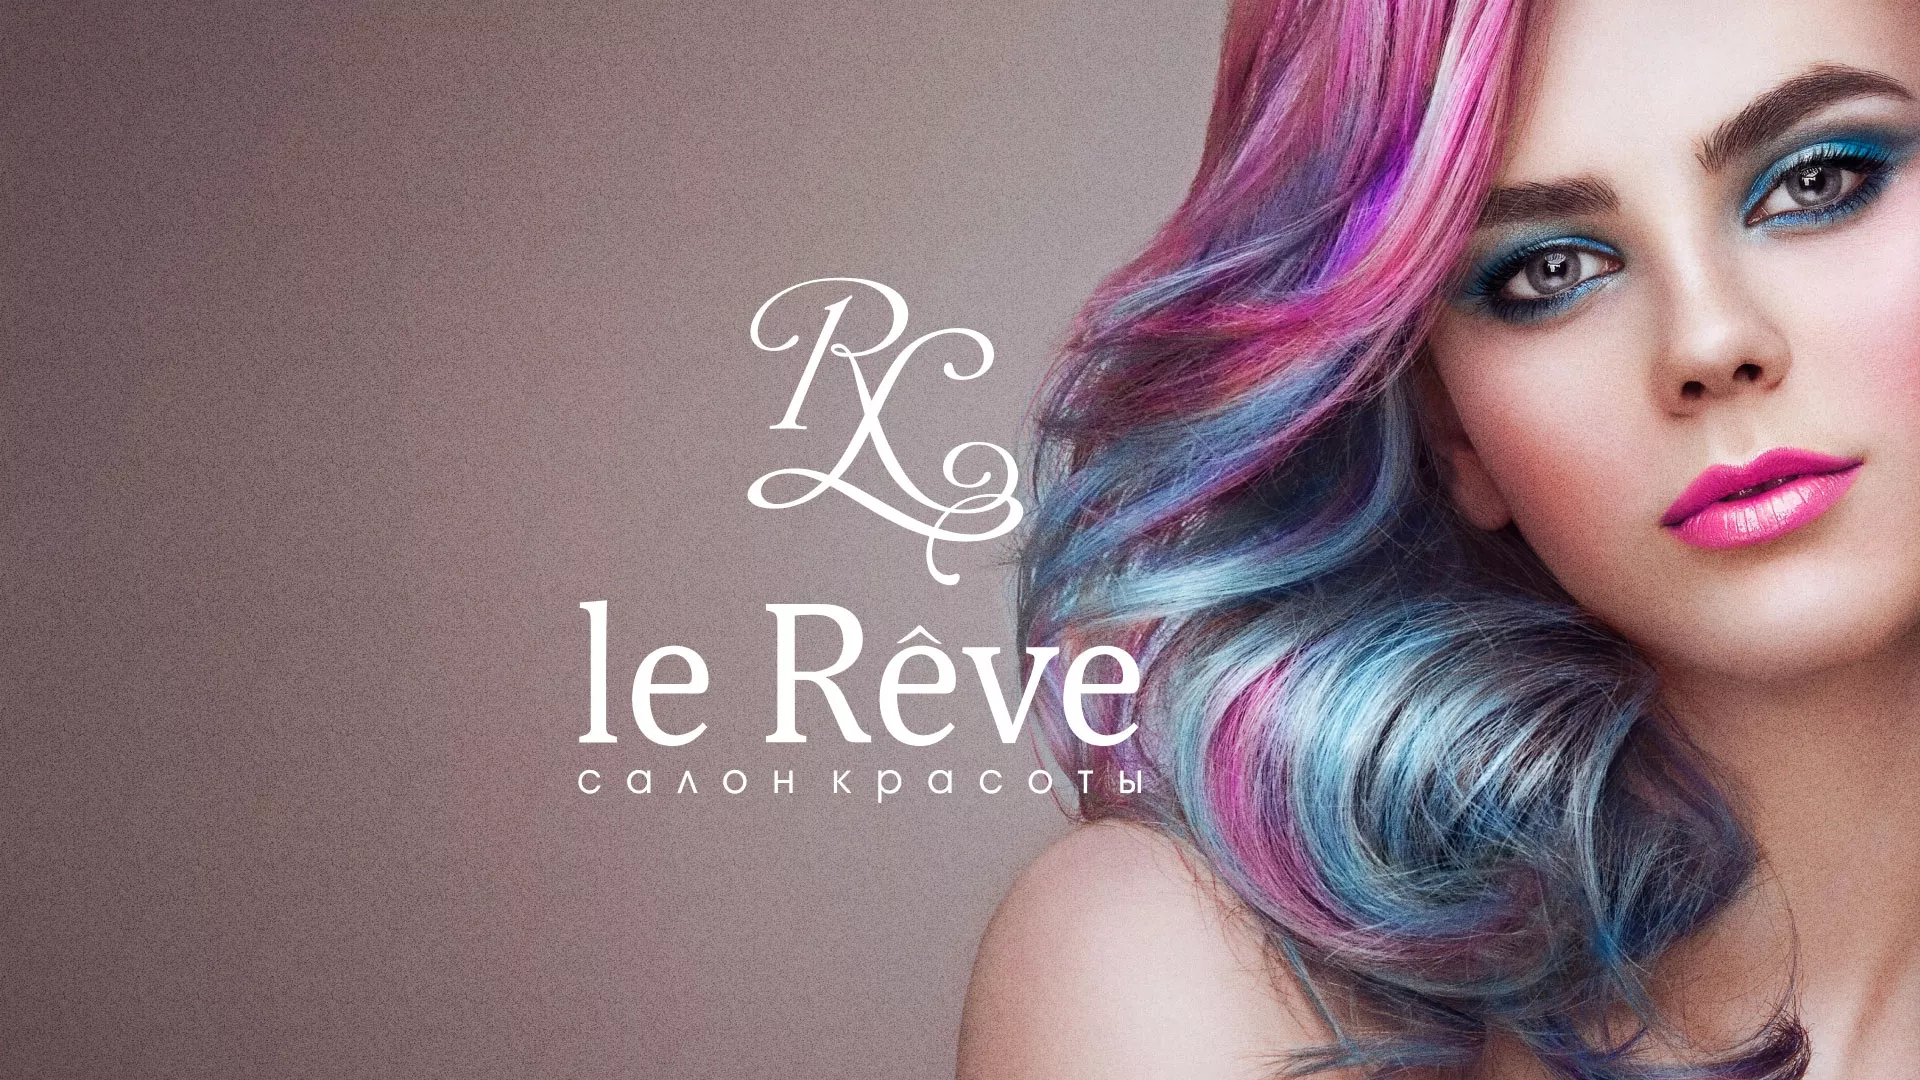 Создание сайта для салона красоты «Le Reve» в Сатке